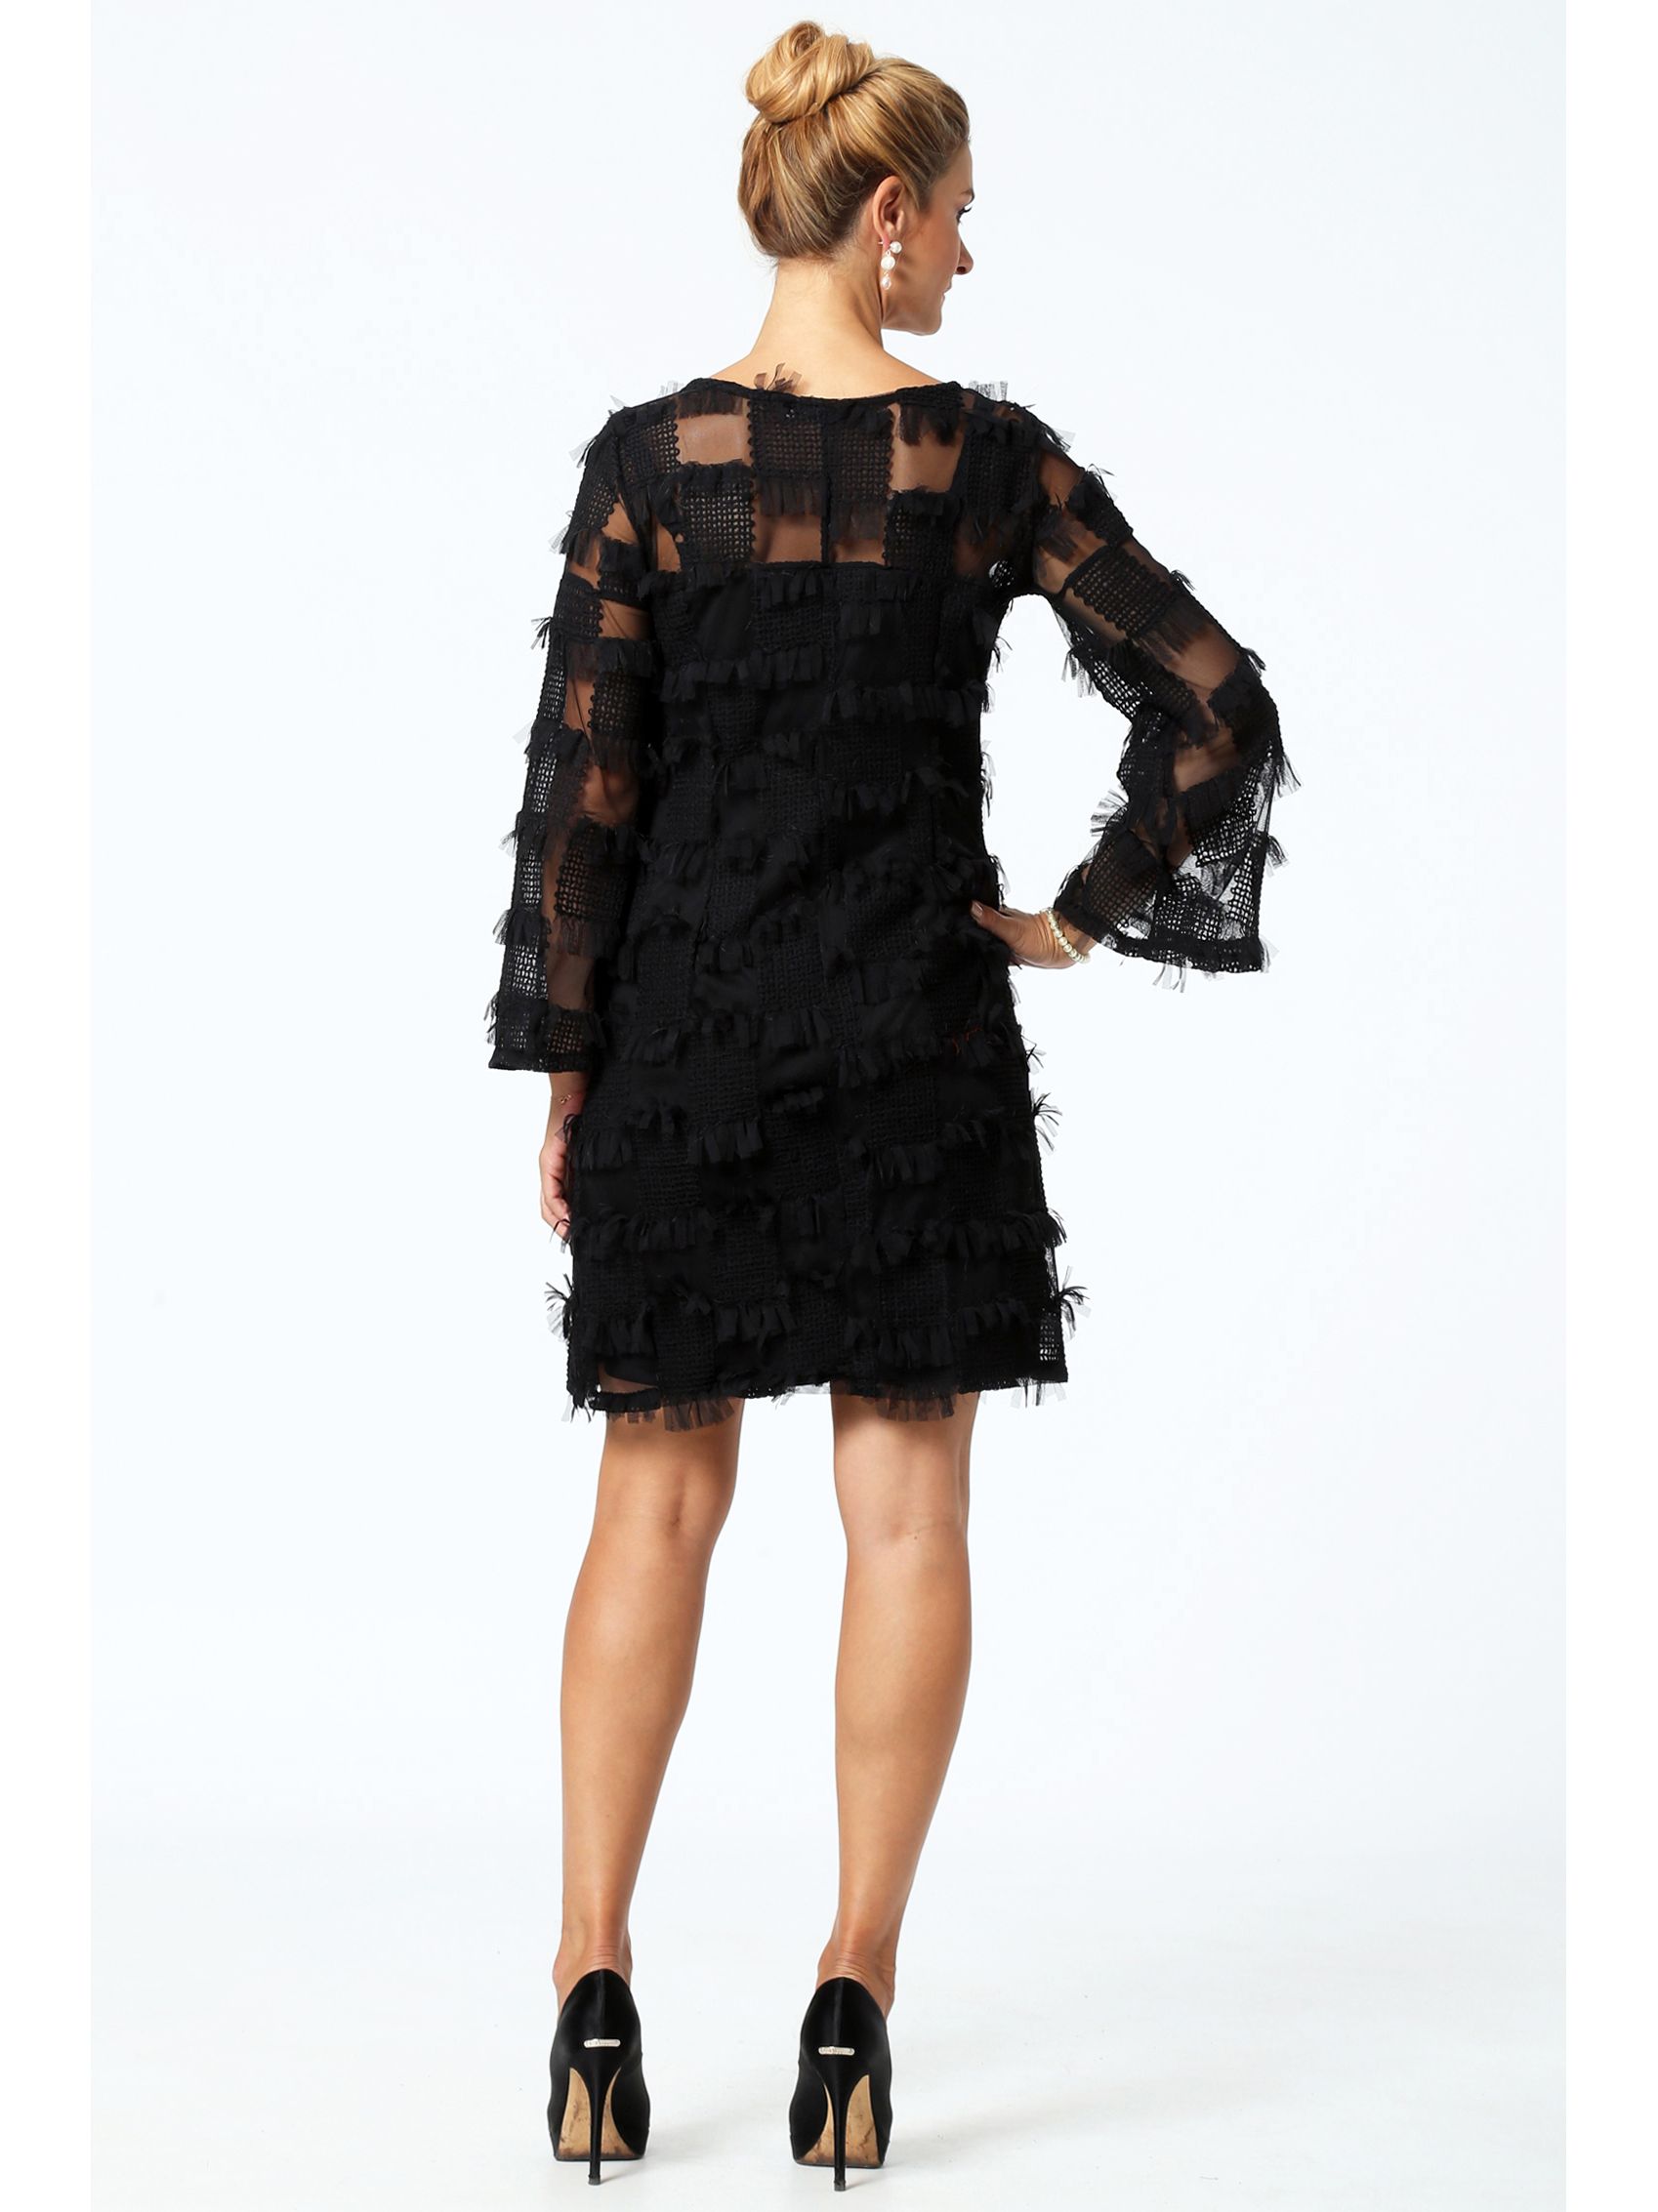 Φόρεμα Μαύρο με Κεντημένο Τούλι D22209